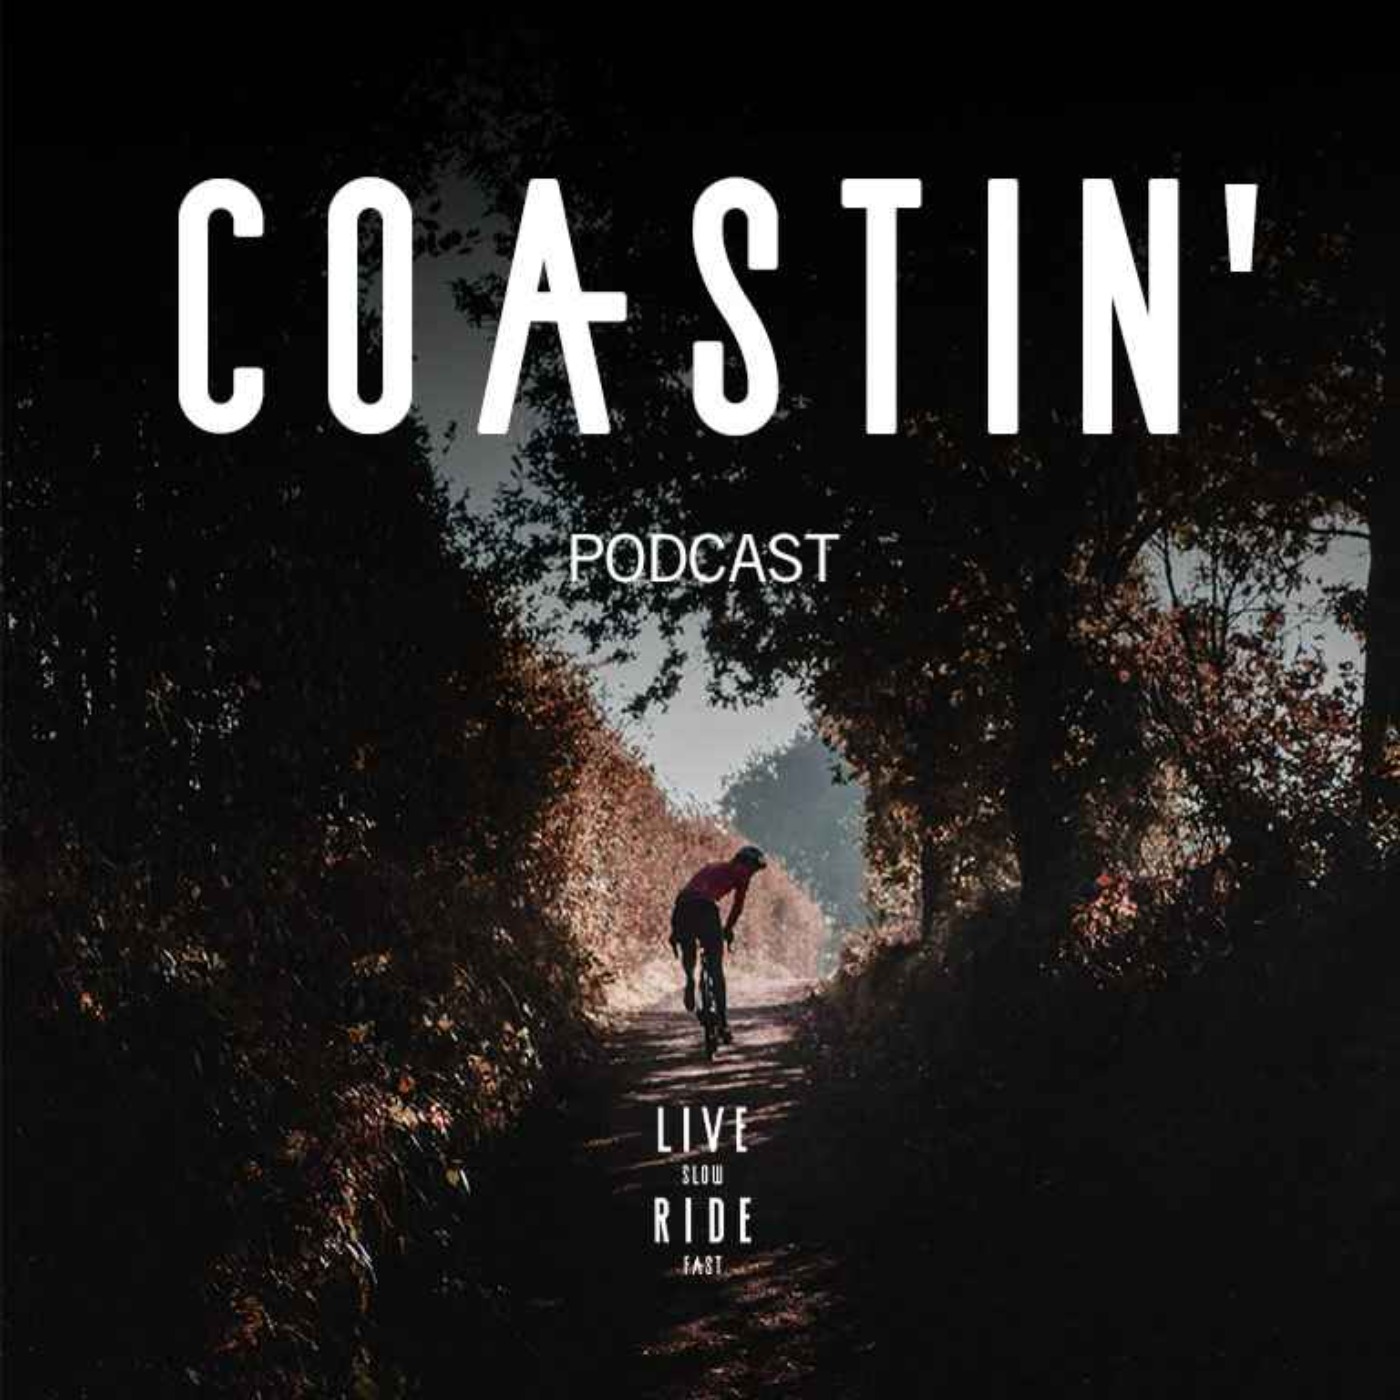 COASTIN' - Ian Boswell